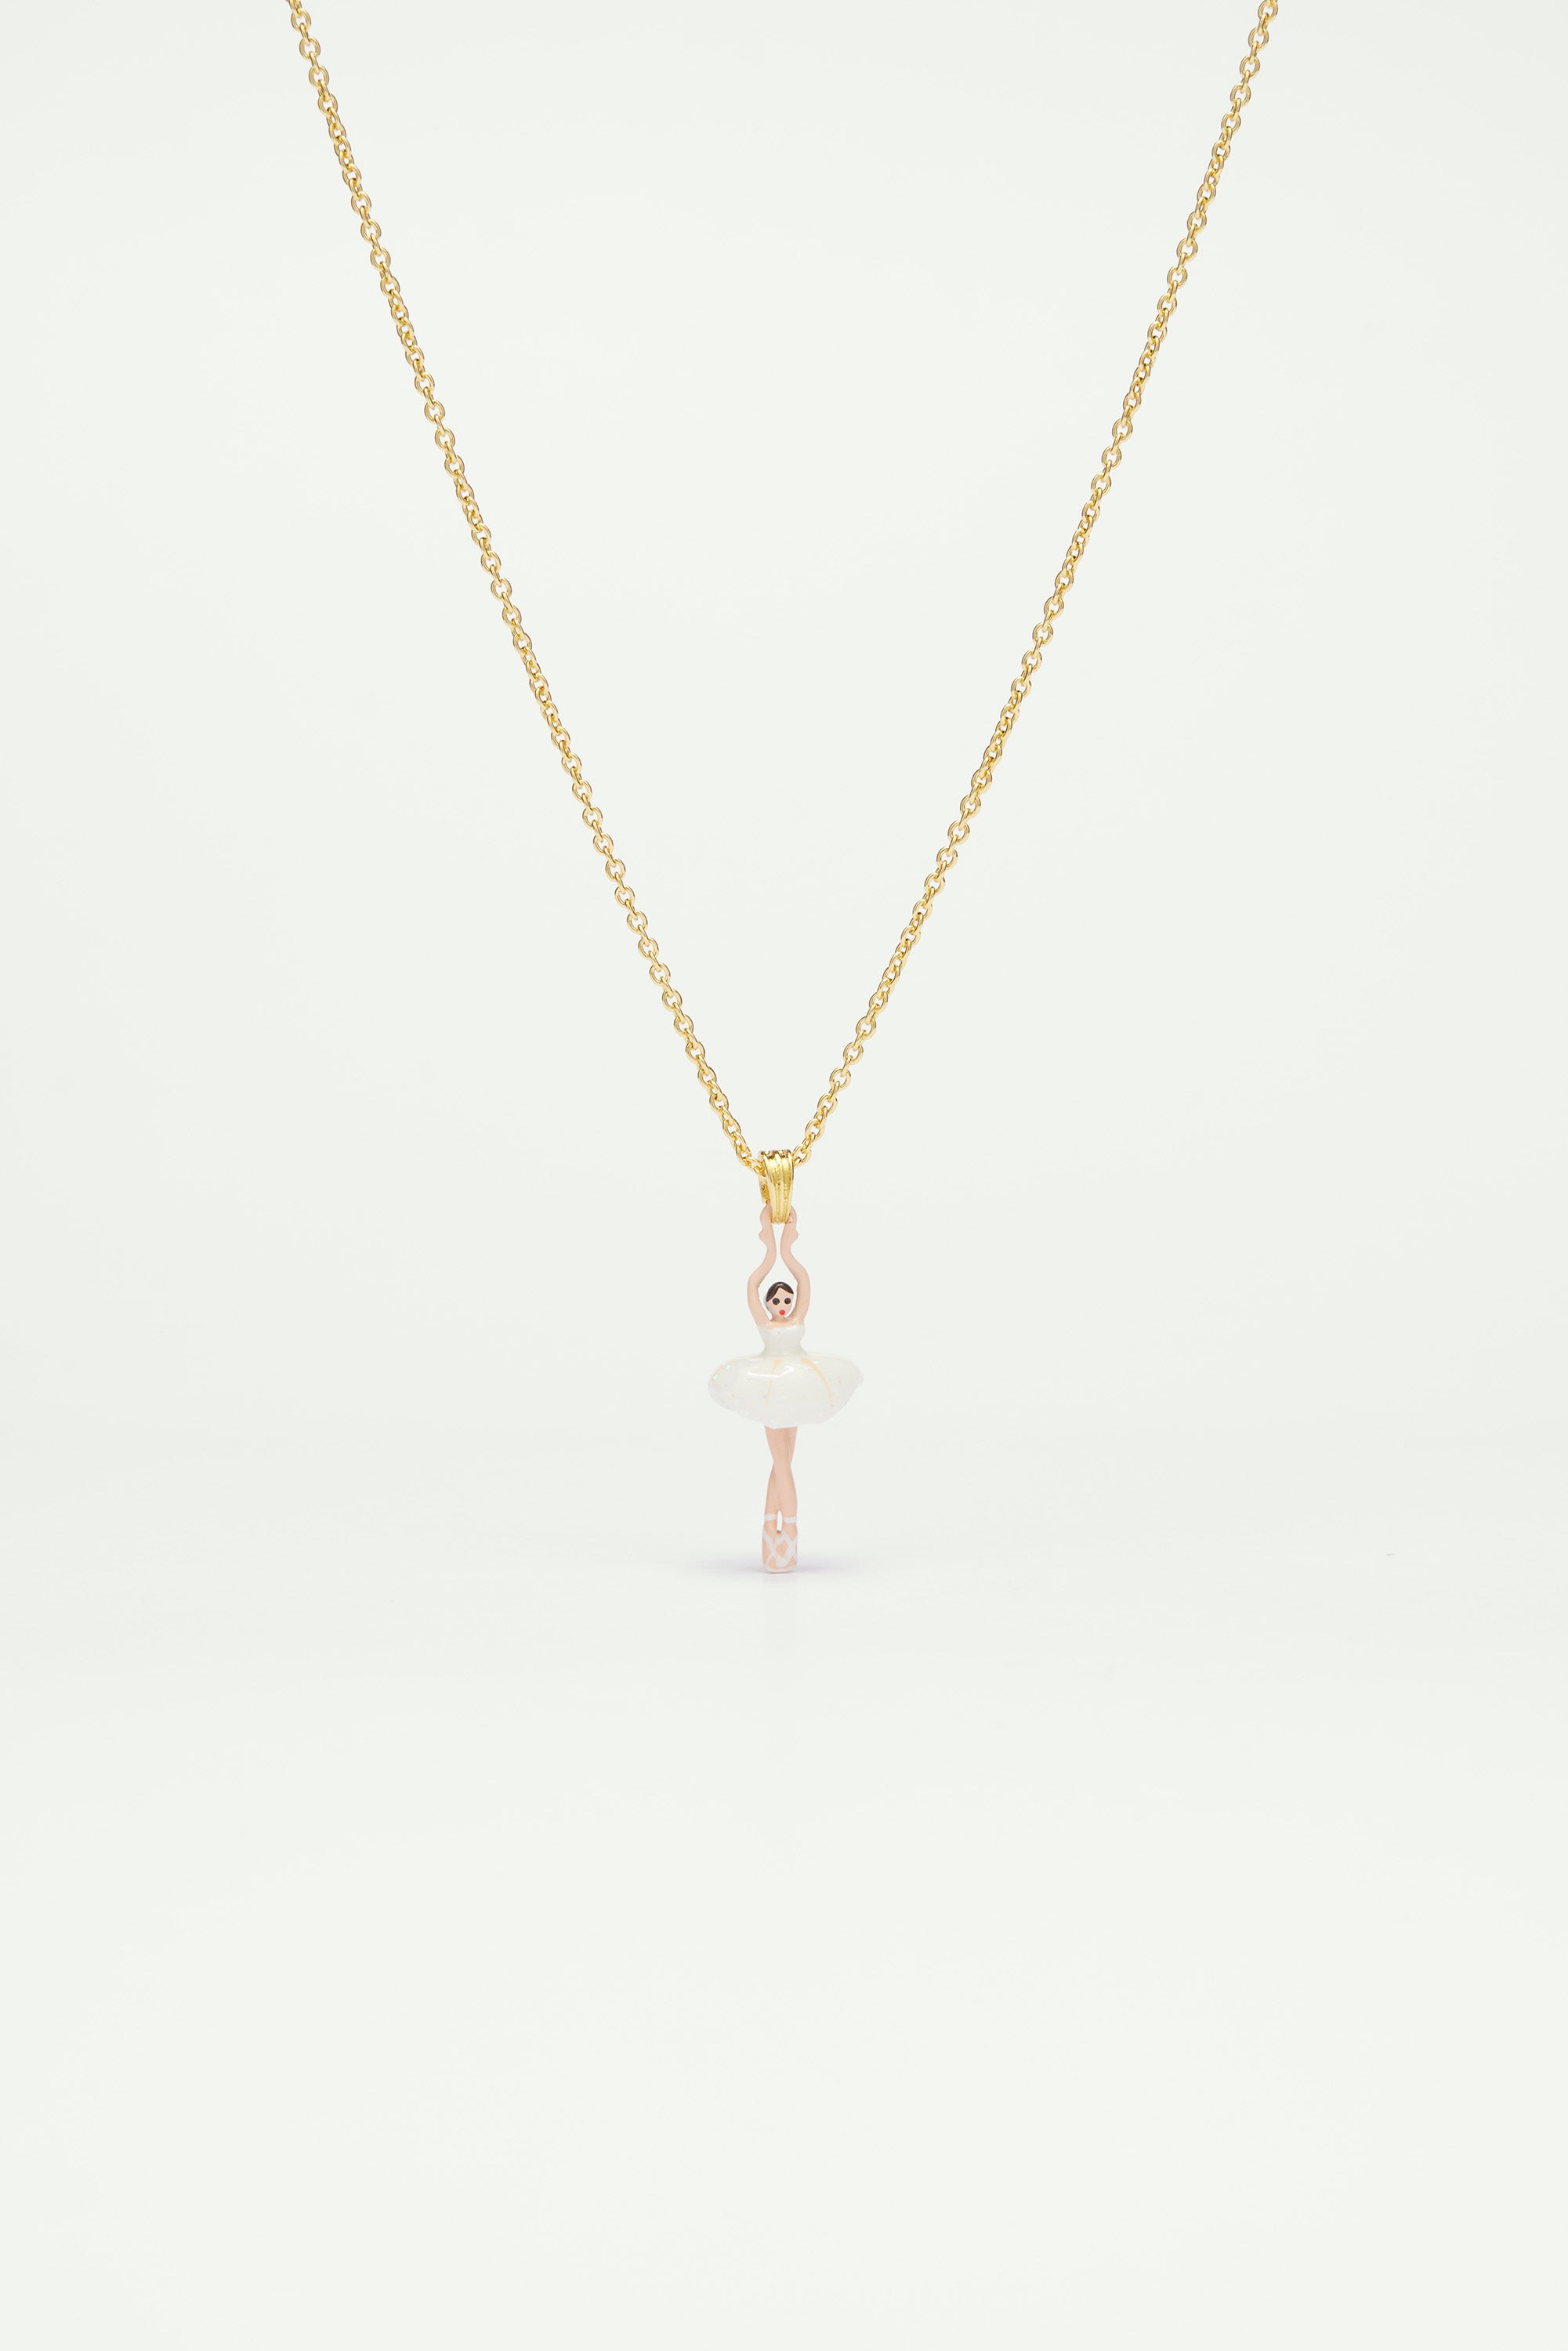 Necklace featuring mini ballerina in a white tutu